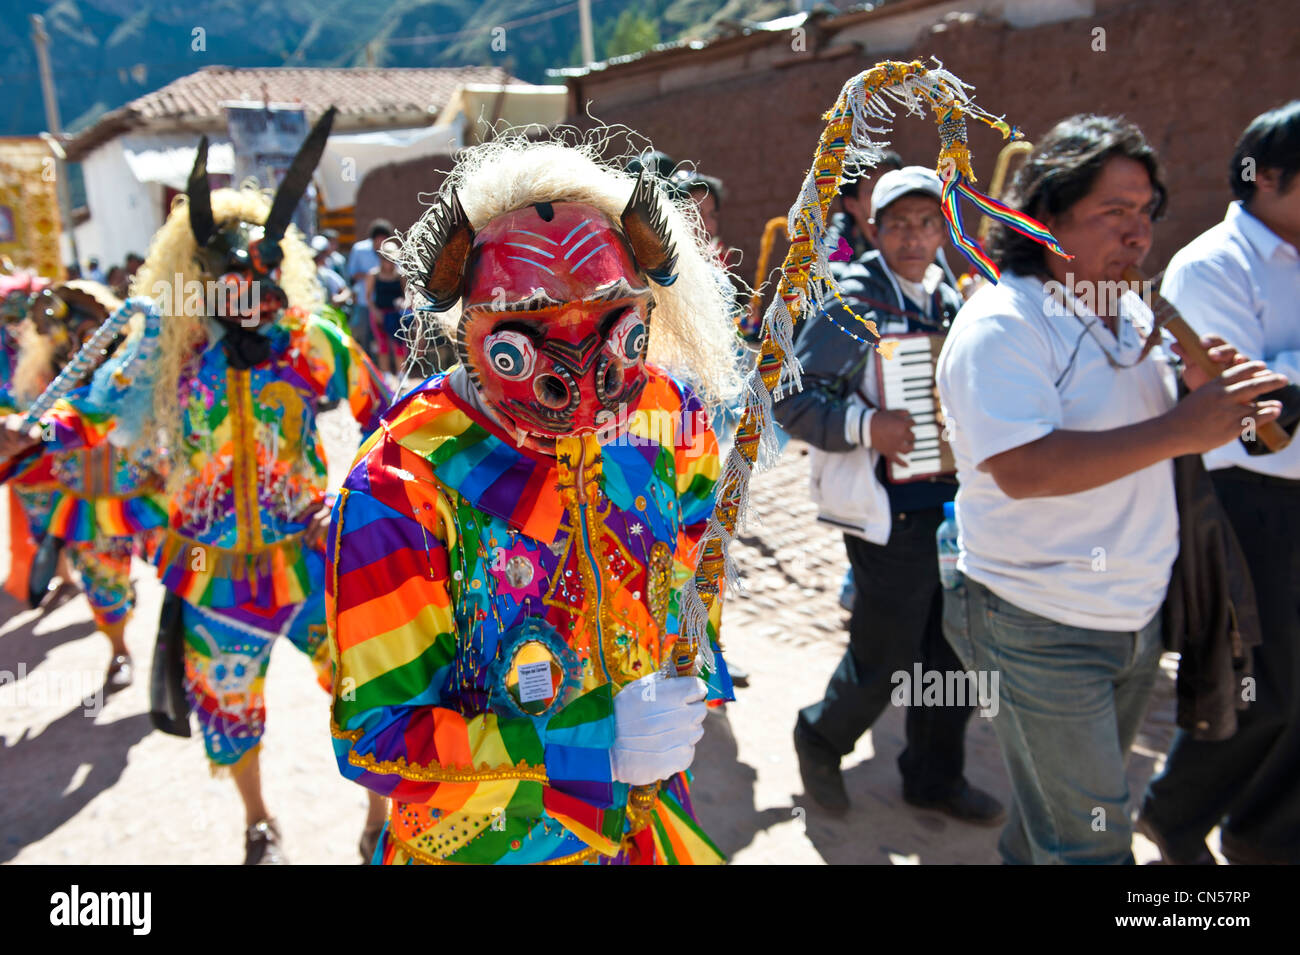 Il Perù, provincia di Cuzco, Inca Sacred Valley, Pisac, festa della Virgen del Carmen, ballerino interpretando Saqra, danza satira Foto Stock